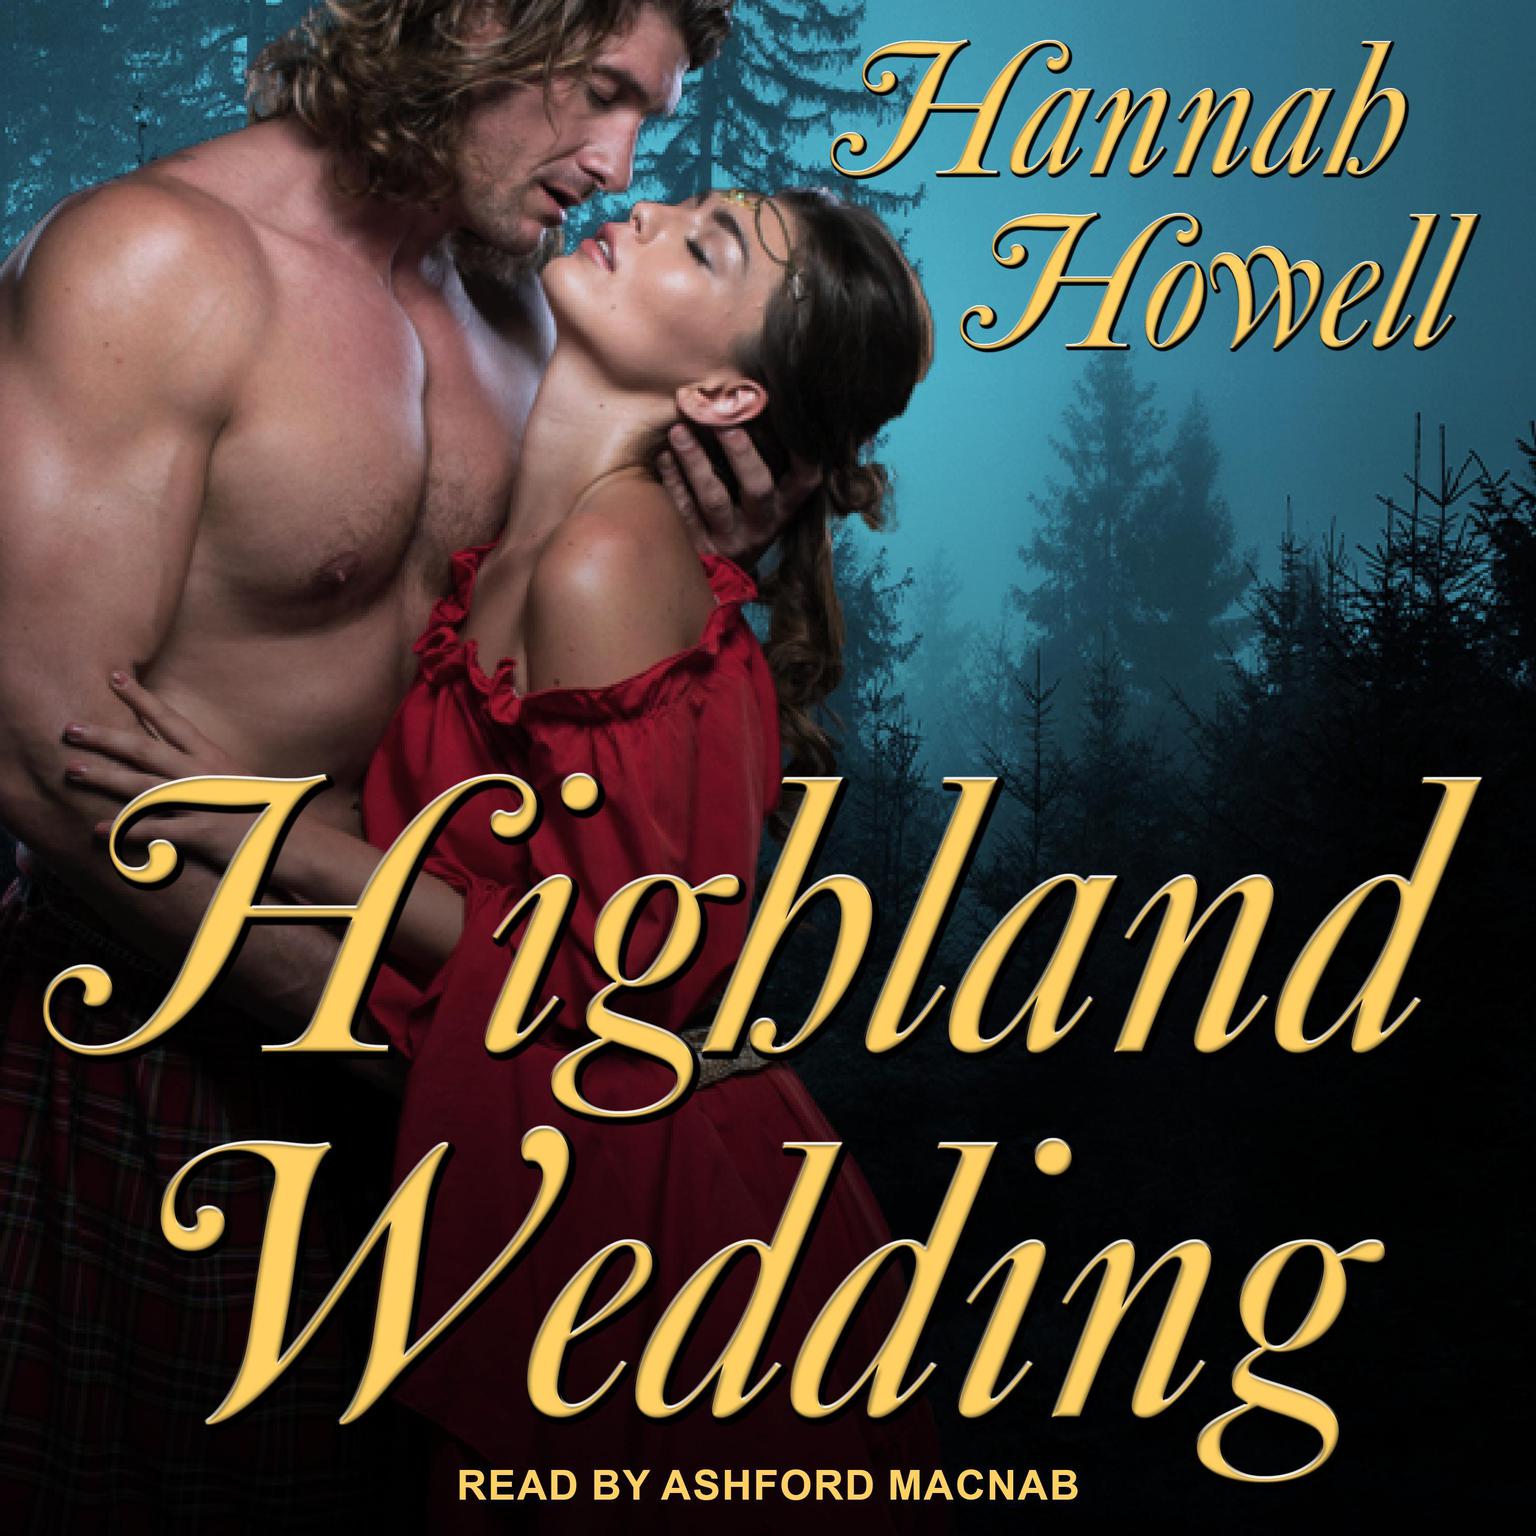 Highland Wedding Audiobook, by Hannah Howell